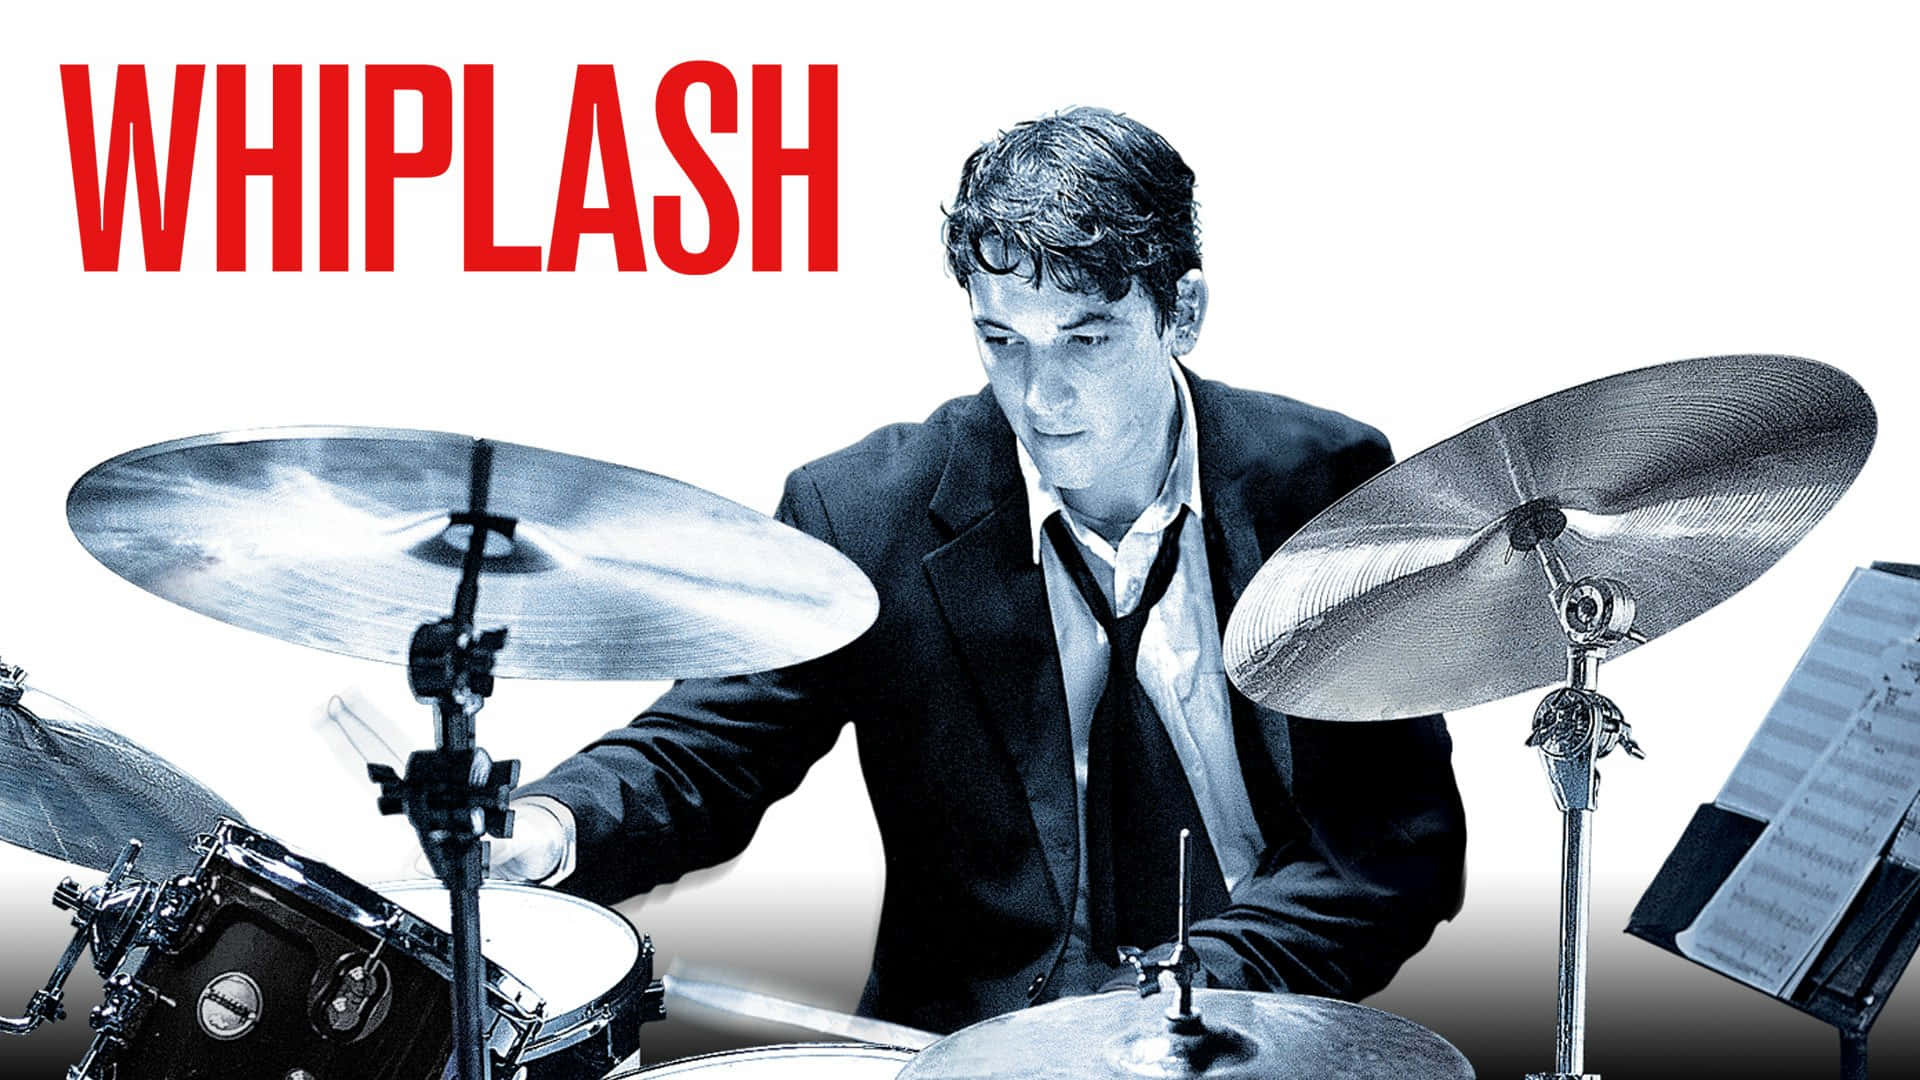 Whiplash Movie Drummer Promotional Art Wallpaper